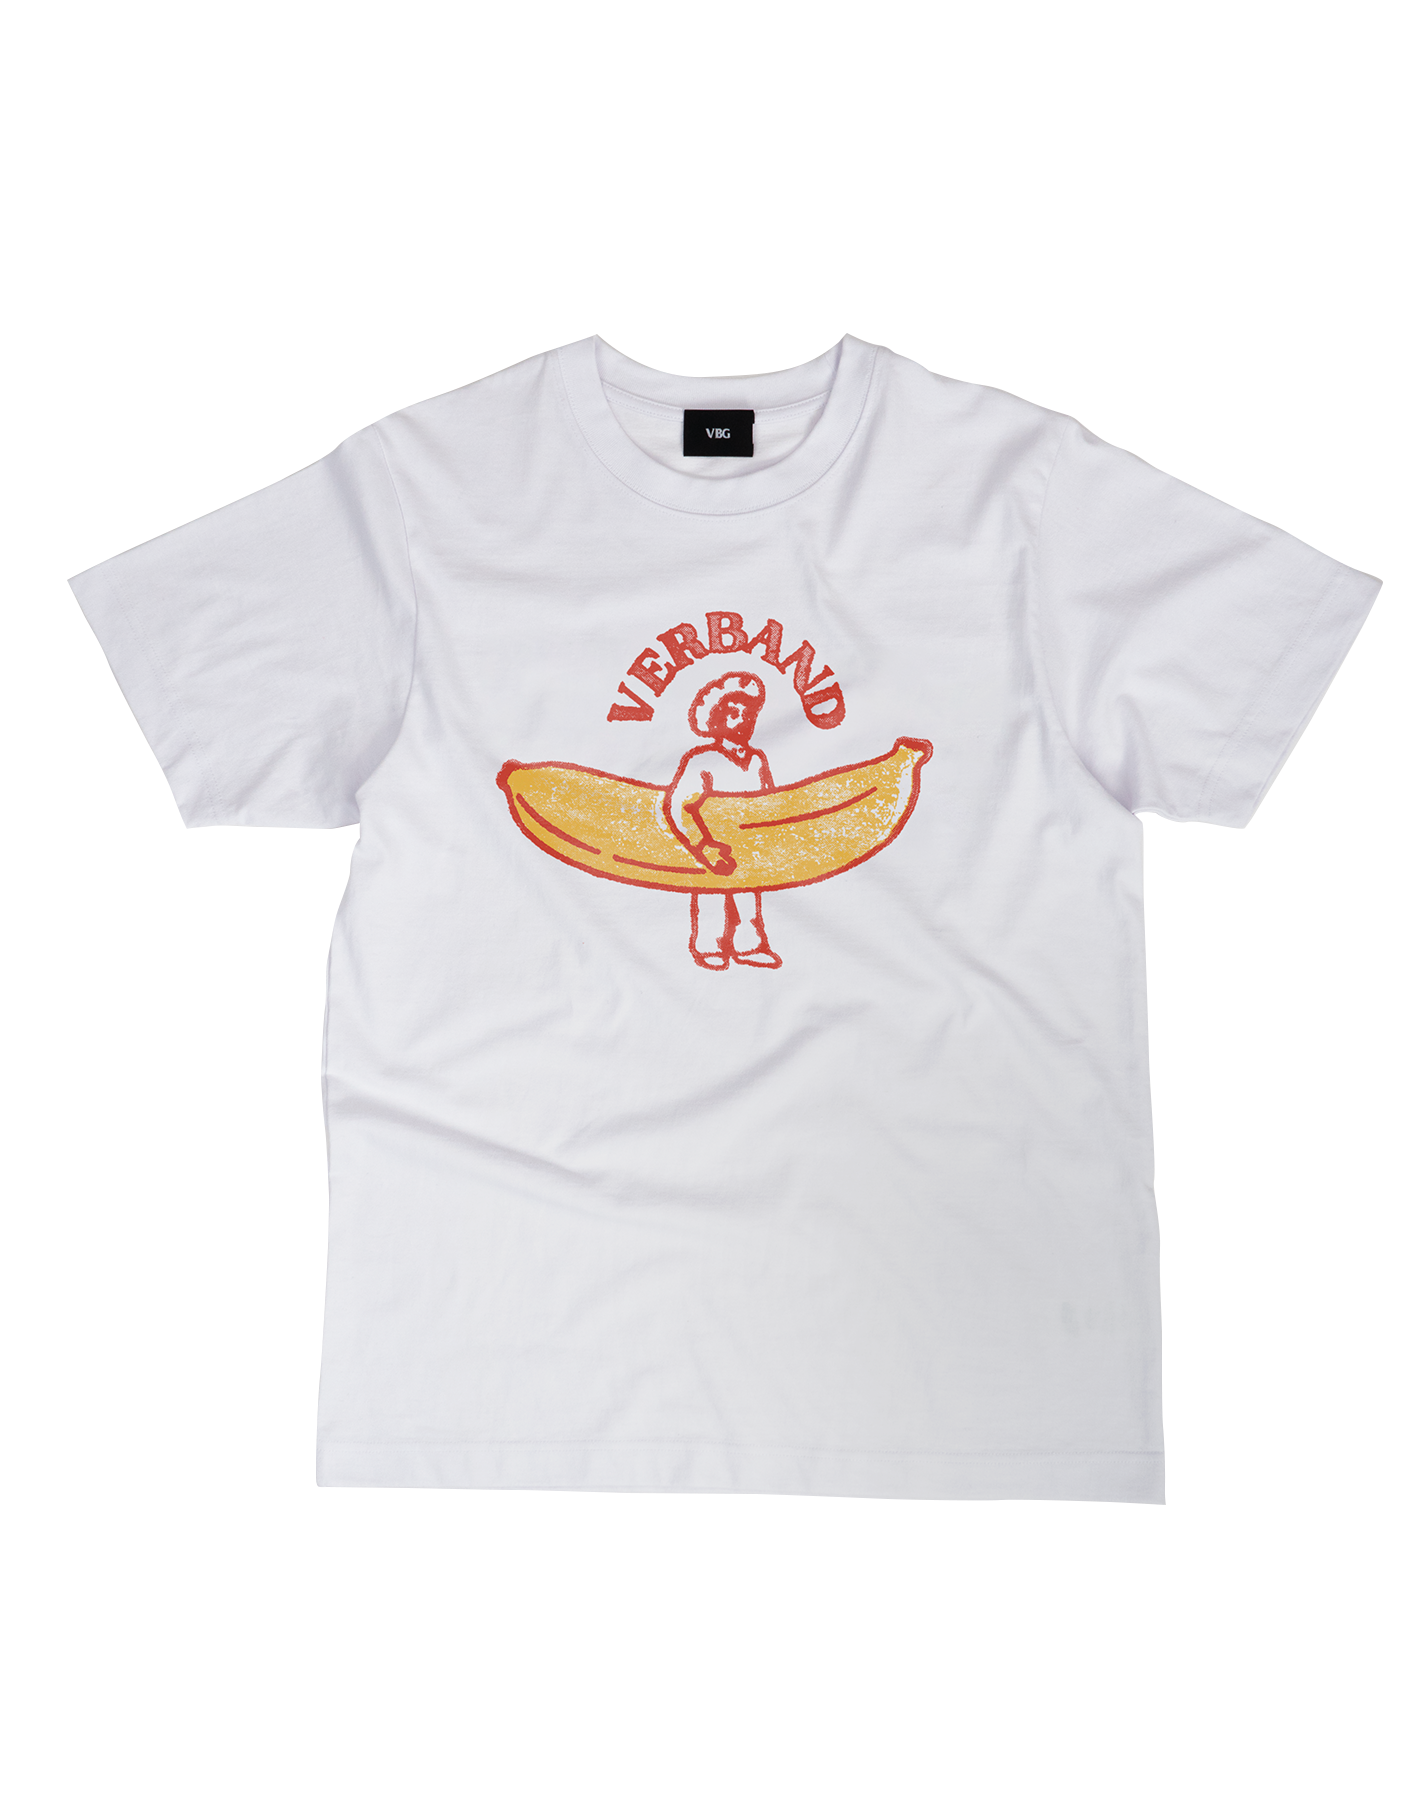 Bananaman T-Shirt - VBG